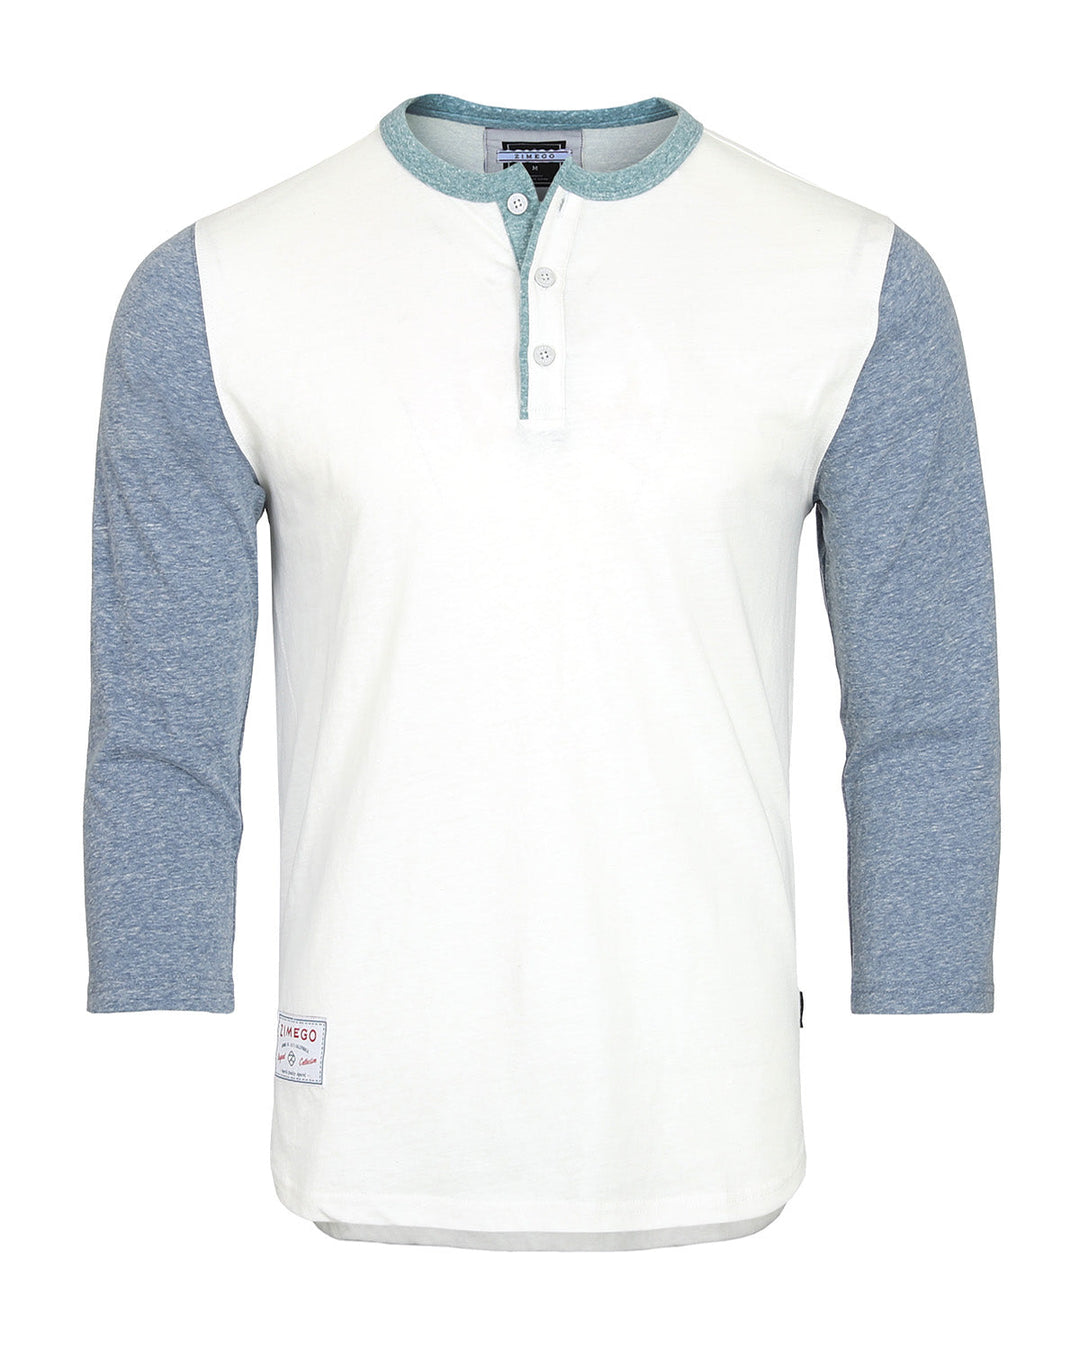 Men's 3/4 Sleeve Baseball Retro Henley Casual Athletic Button Crewneck Shirt